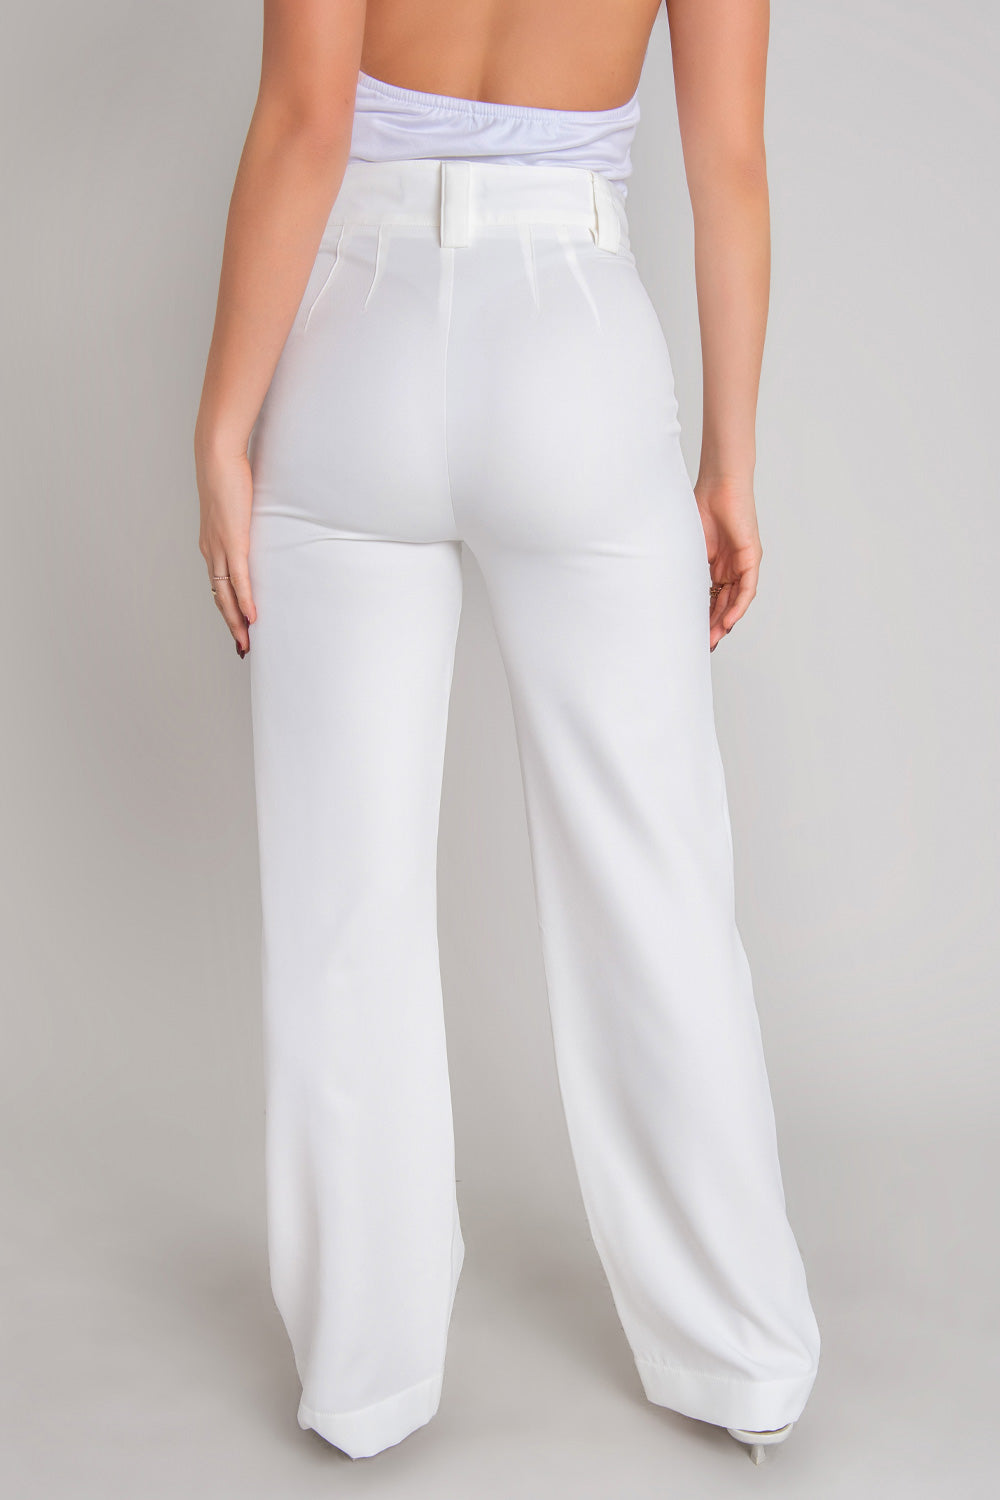 Pantalón ajustado de fit recto, cintura alta con pretina y trabillas, detalle de raya frontal, cierre con botón en contraste y cremallera oculta.